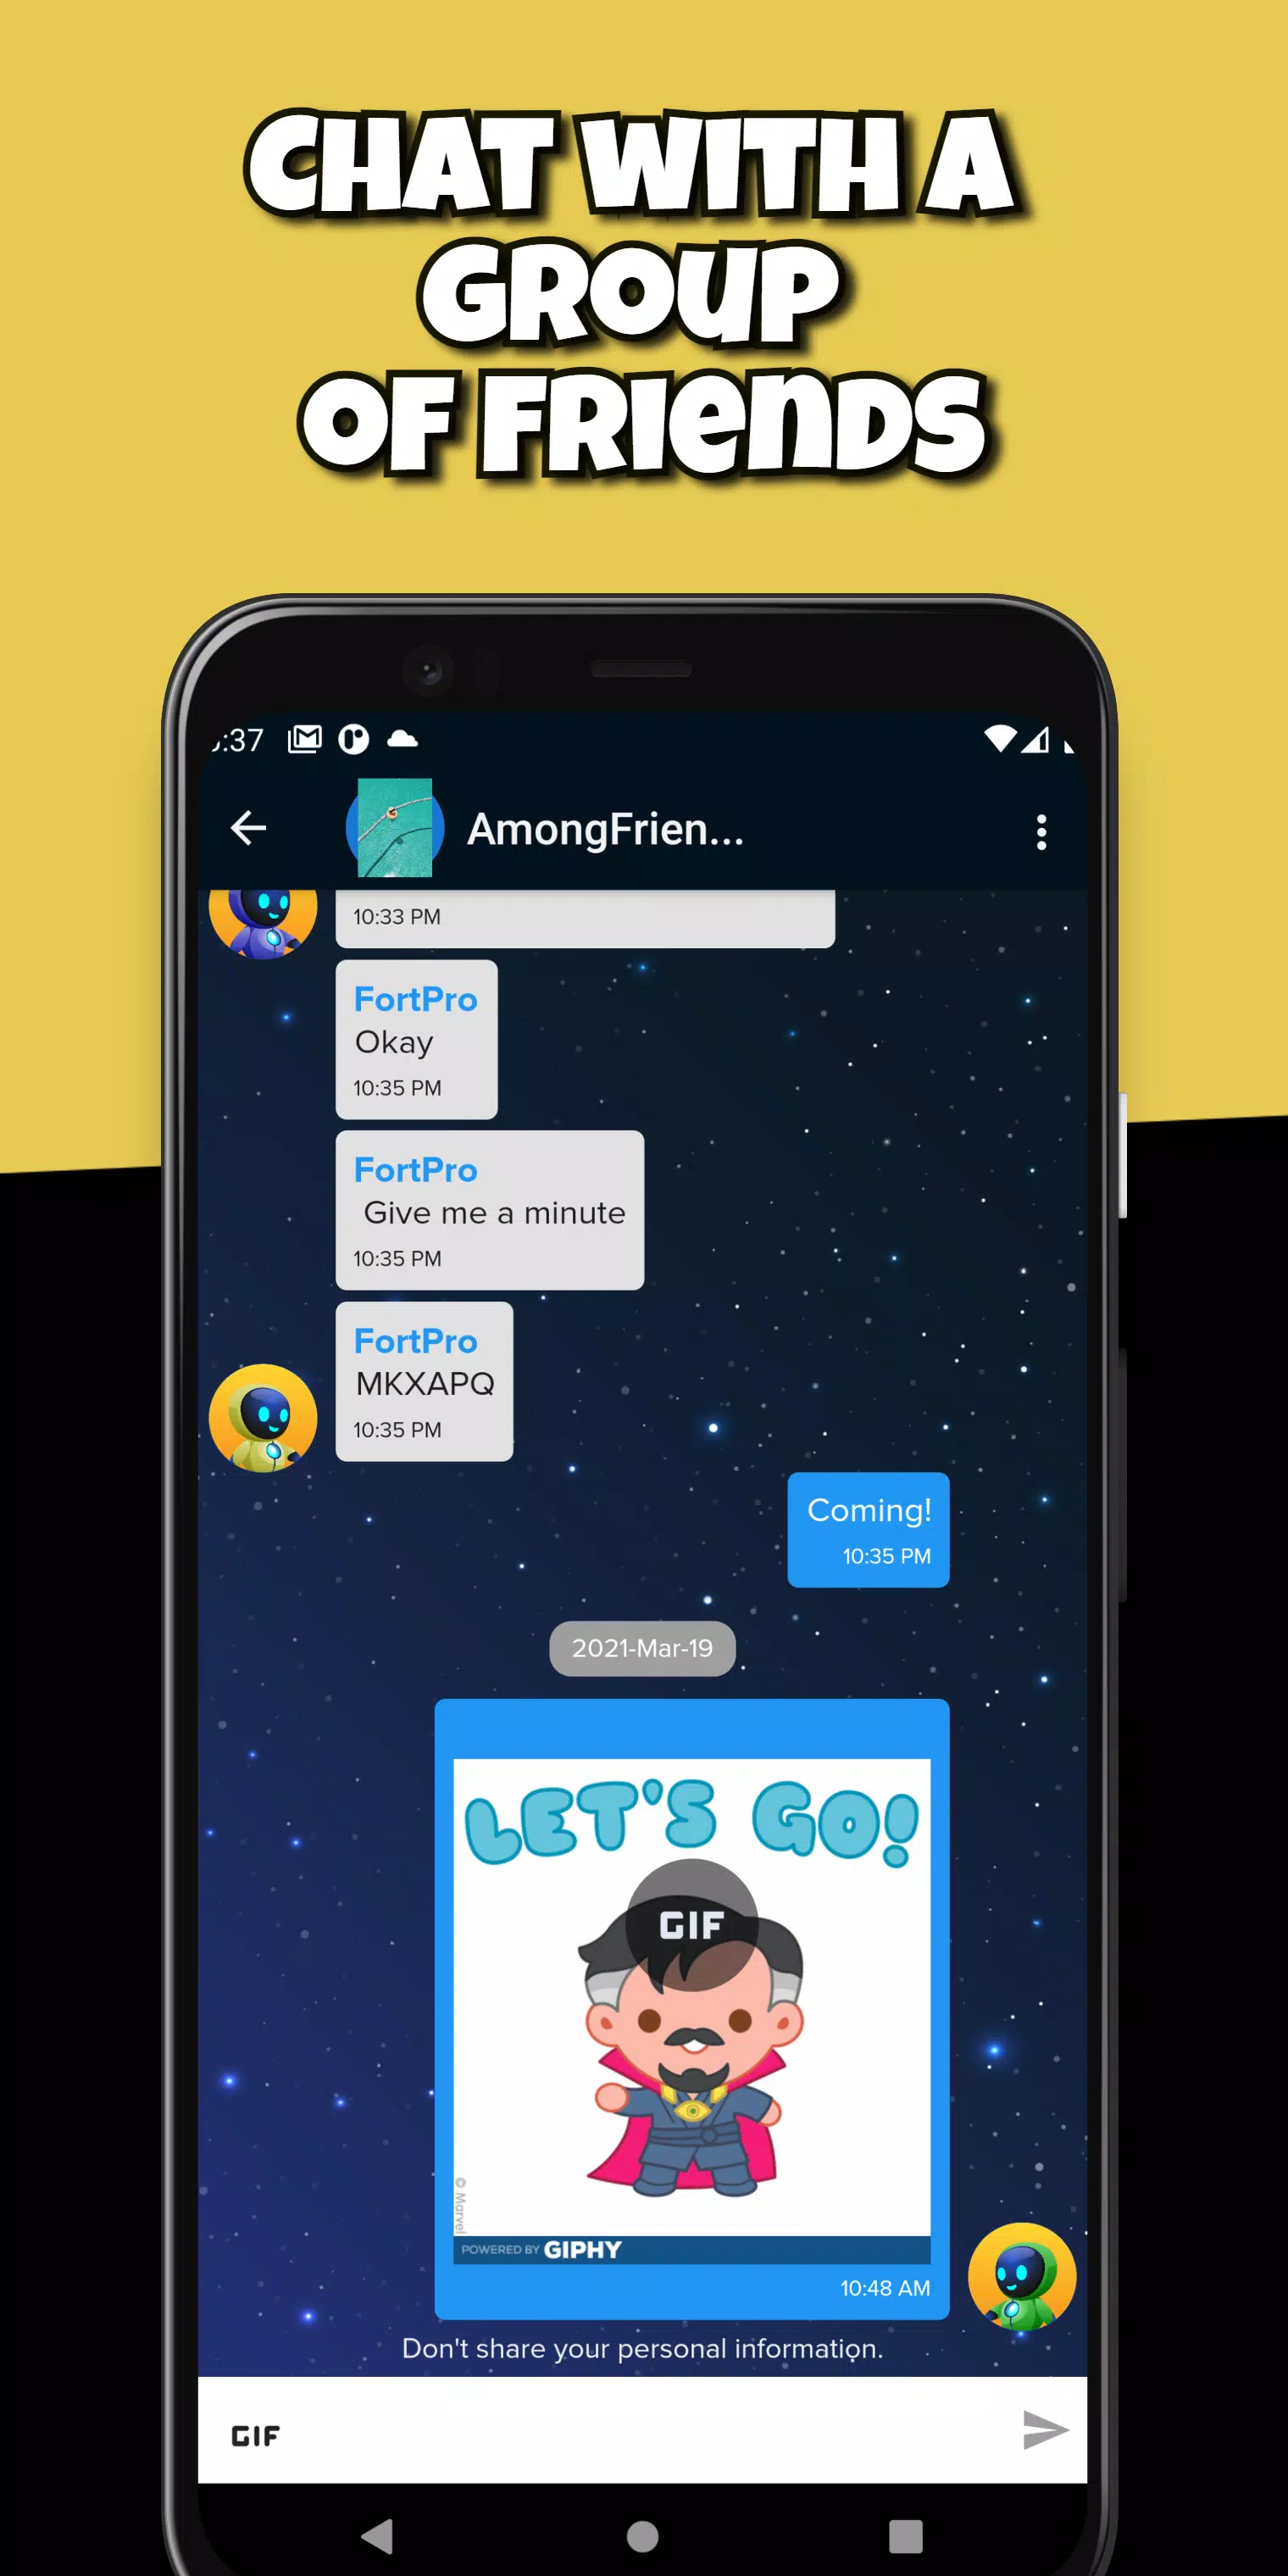 CastChat - Chat de Voz – Apps no Google Play